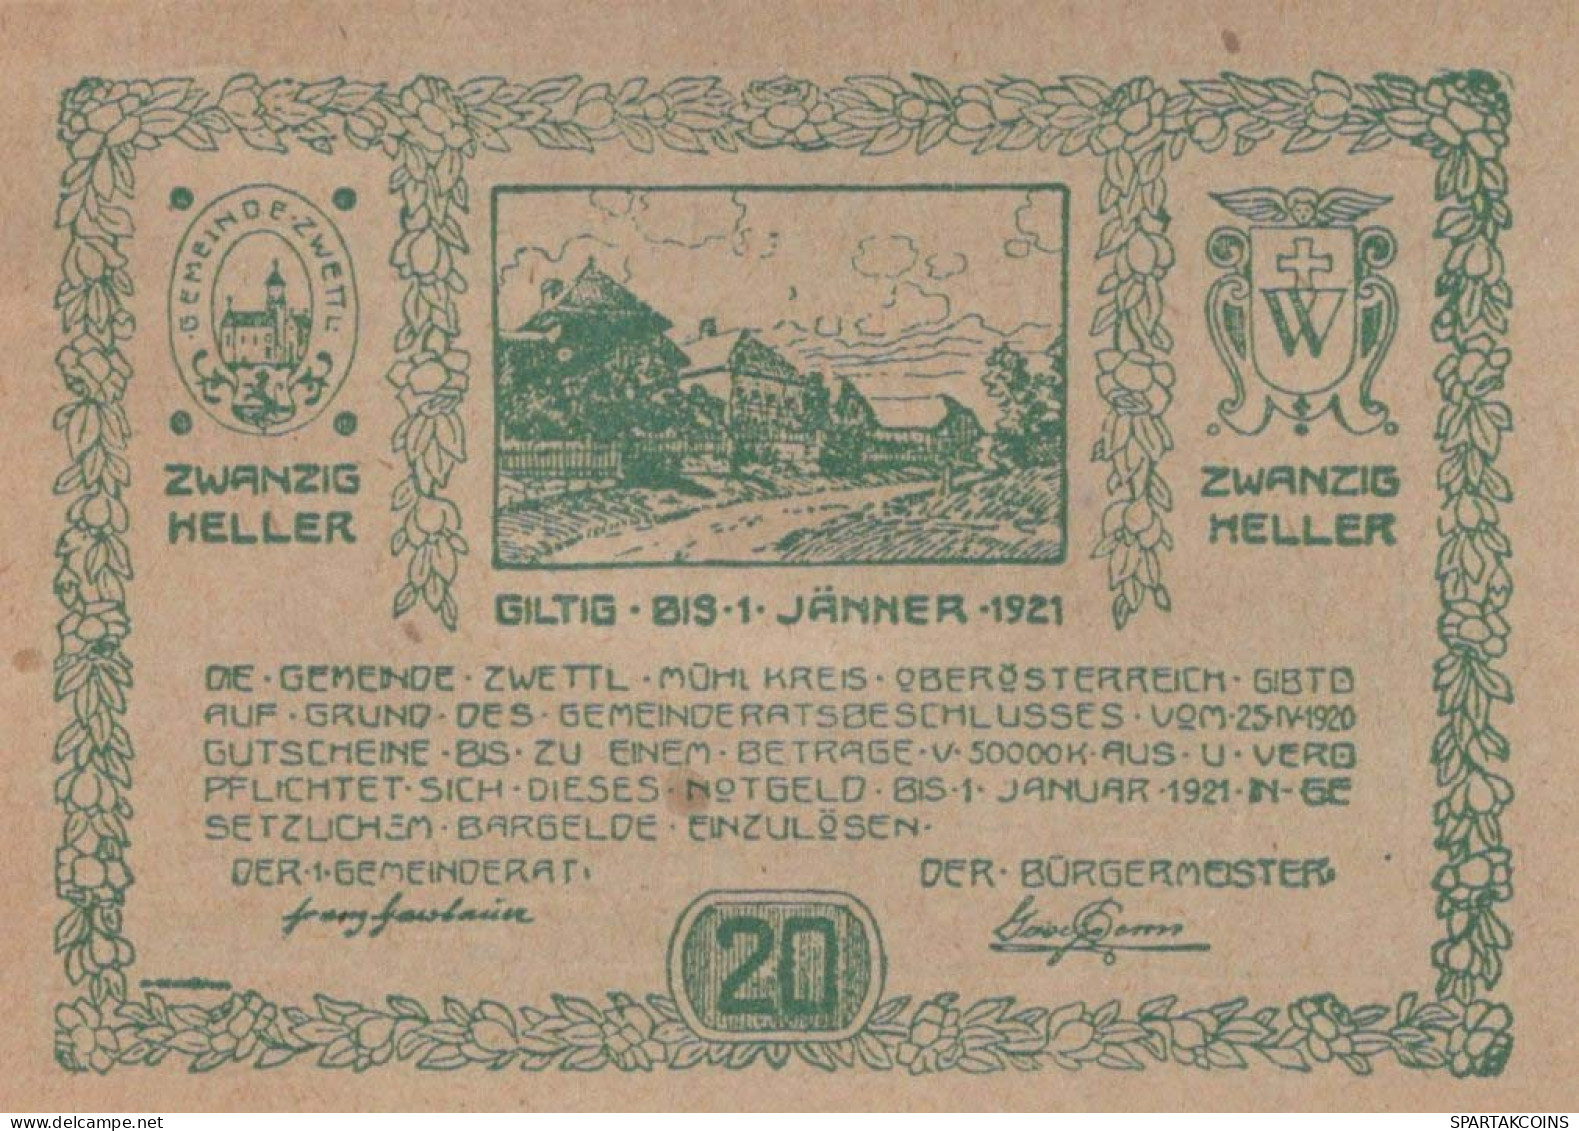 20 HELLER 1920 Stadt ZWETTL IM MÜHLKREIS Oberösterreich Österreich Notgeld Papiergeld Banknote #PG760 - [11] Lokale Uitgaven